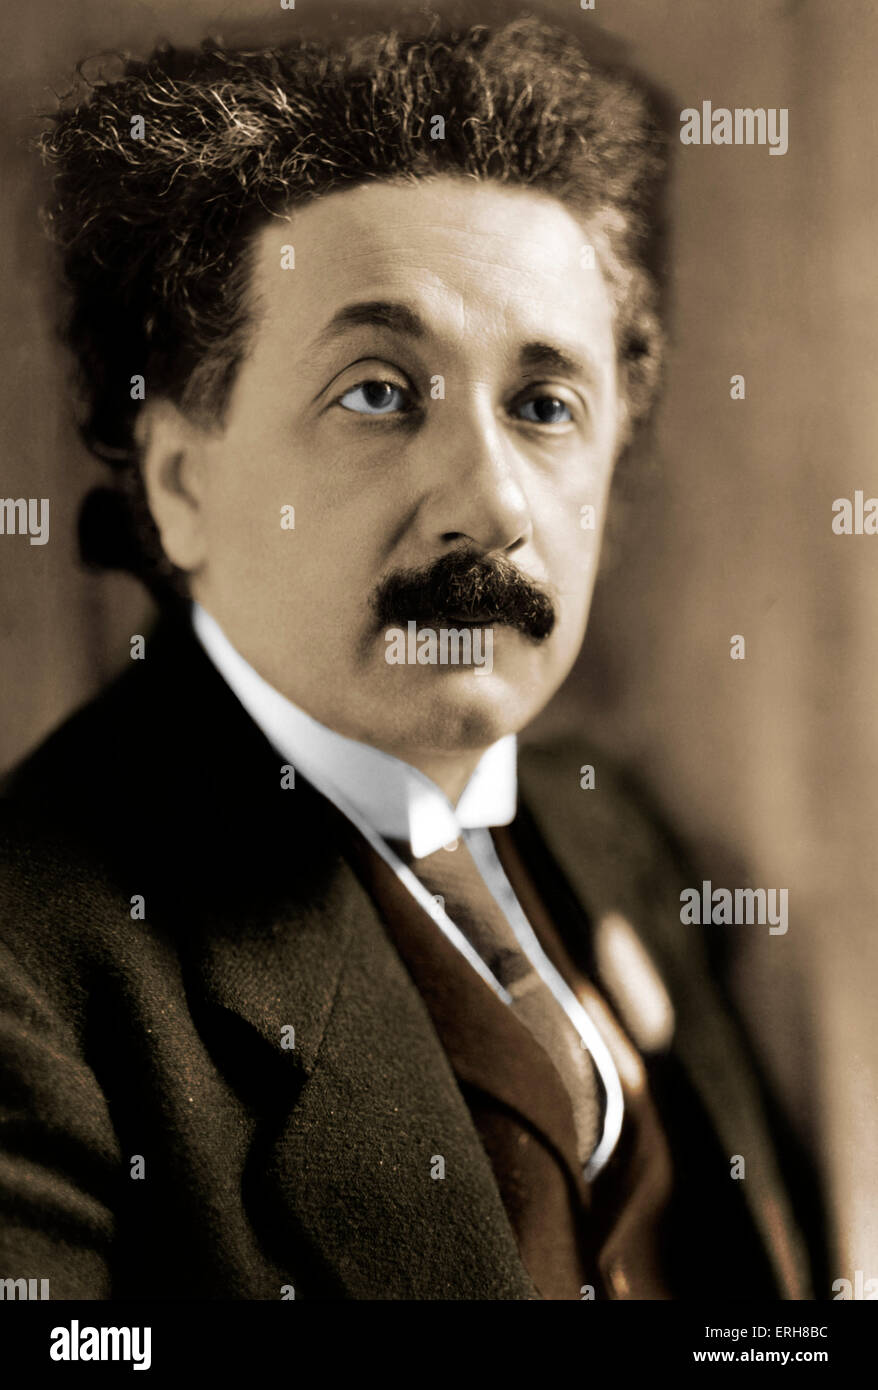 Albert Einstein - Porträt von deutscher theoretischer Physiker. Nobelpreisträger, 1921. 14. März 1879 – 18. April 1955 Stockfoto